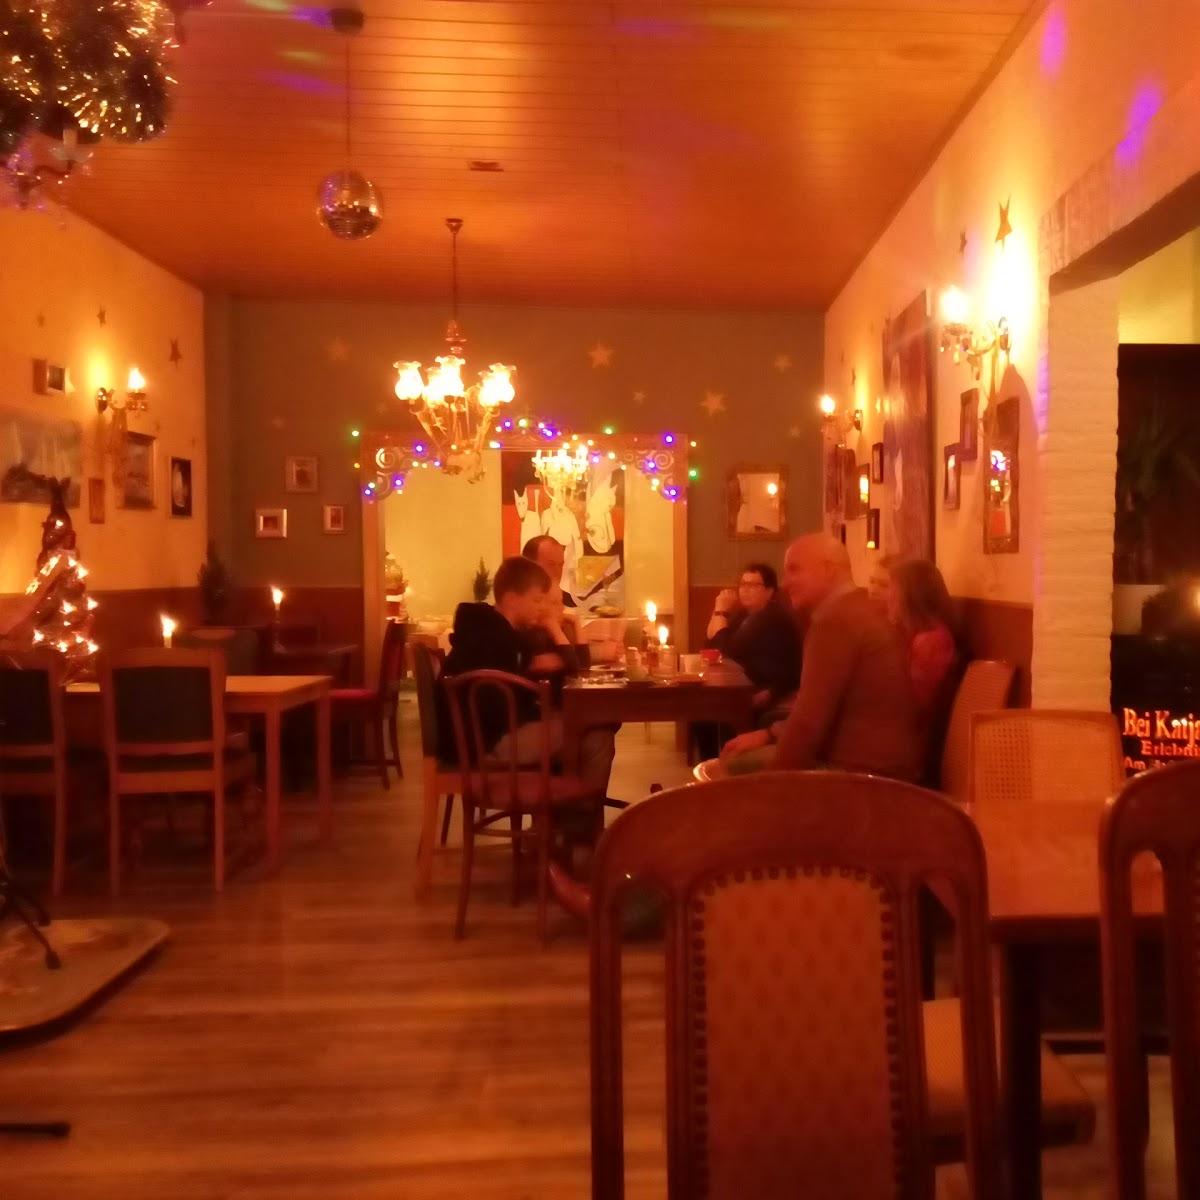 Restaurant "Dinner-Theater" in  Weener